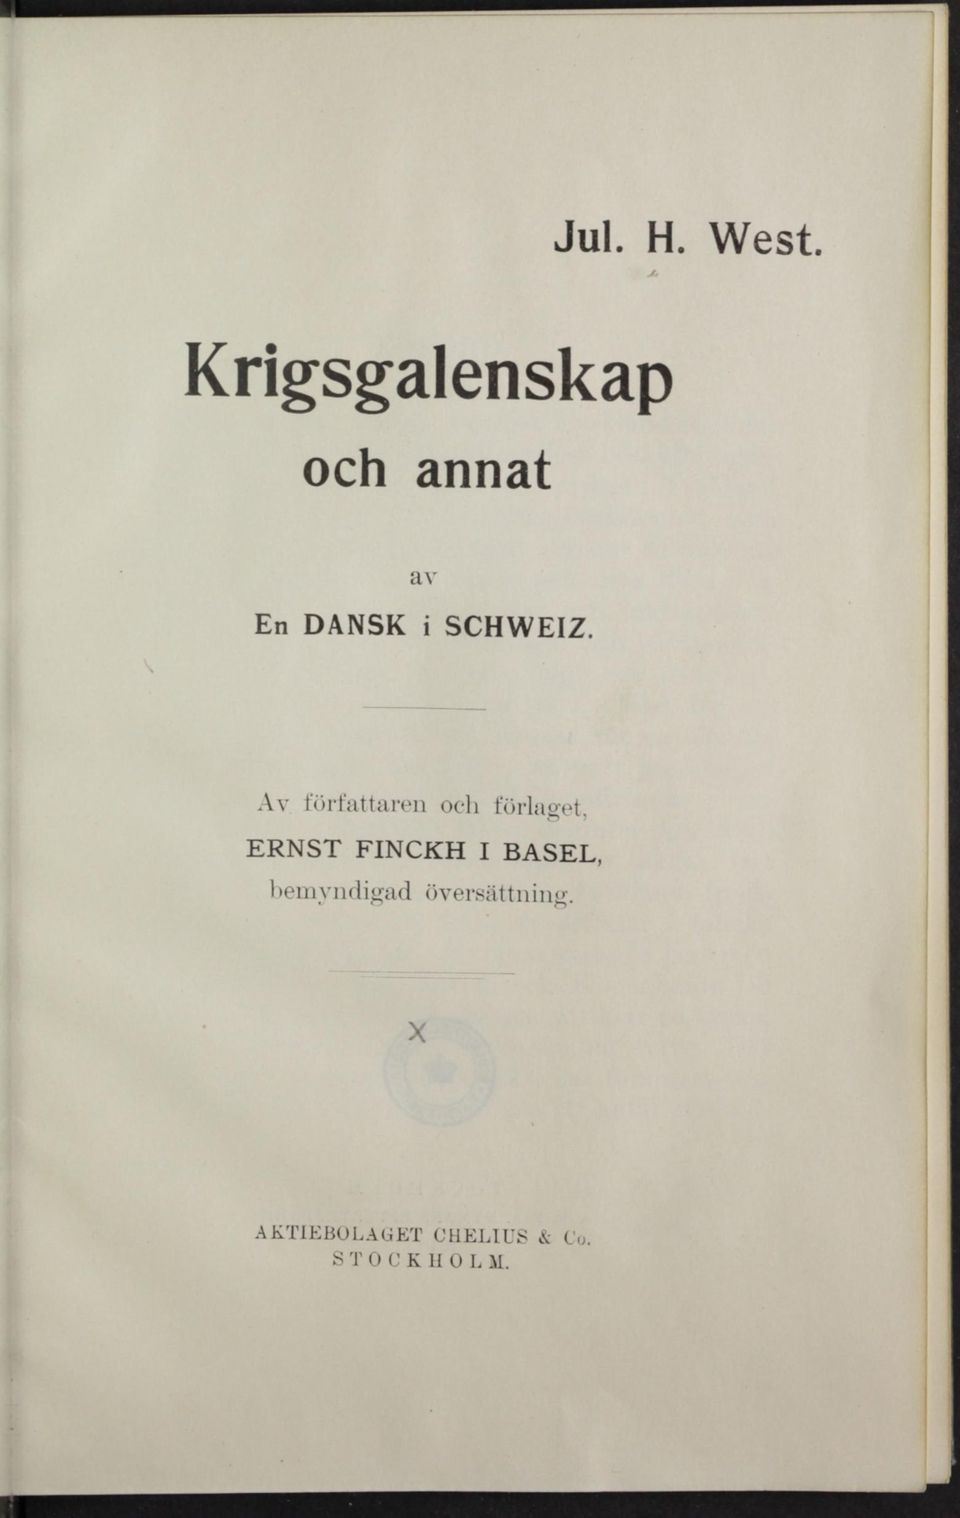 Av författaren och forlaget, ERNST FINCKH I